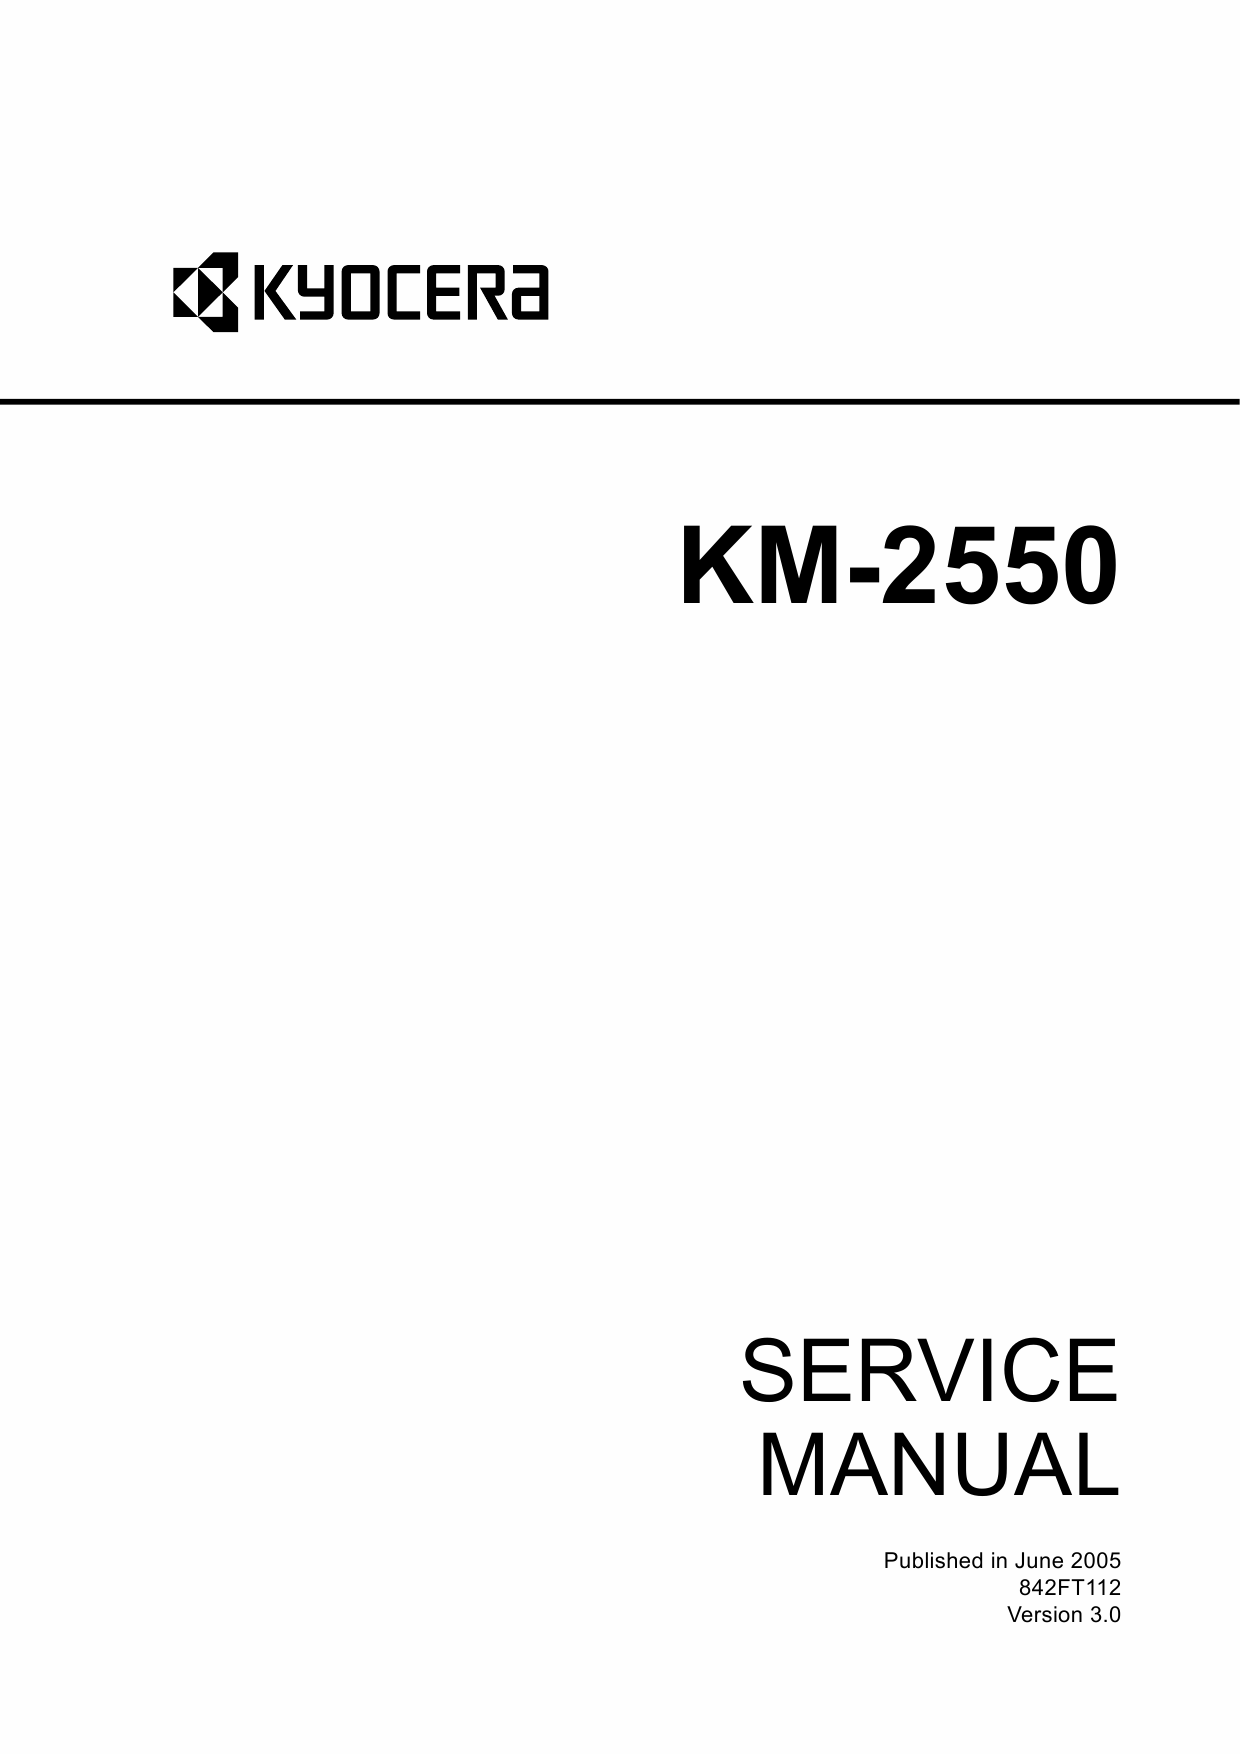 KYOCERA Copier KM-2550 Service Manual-1